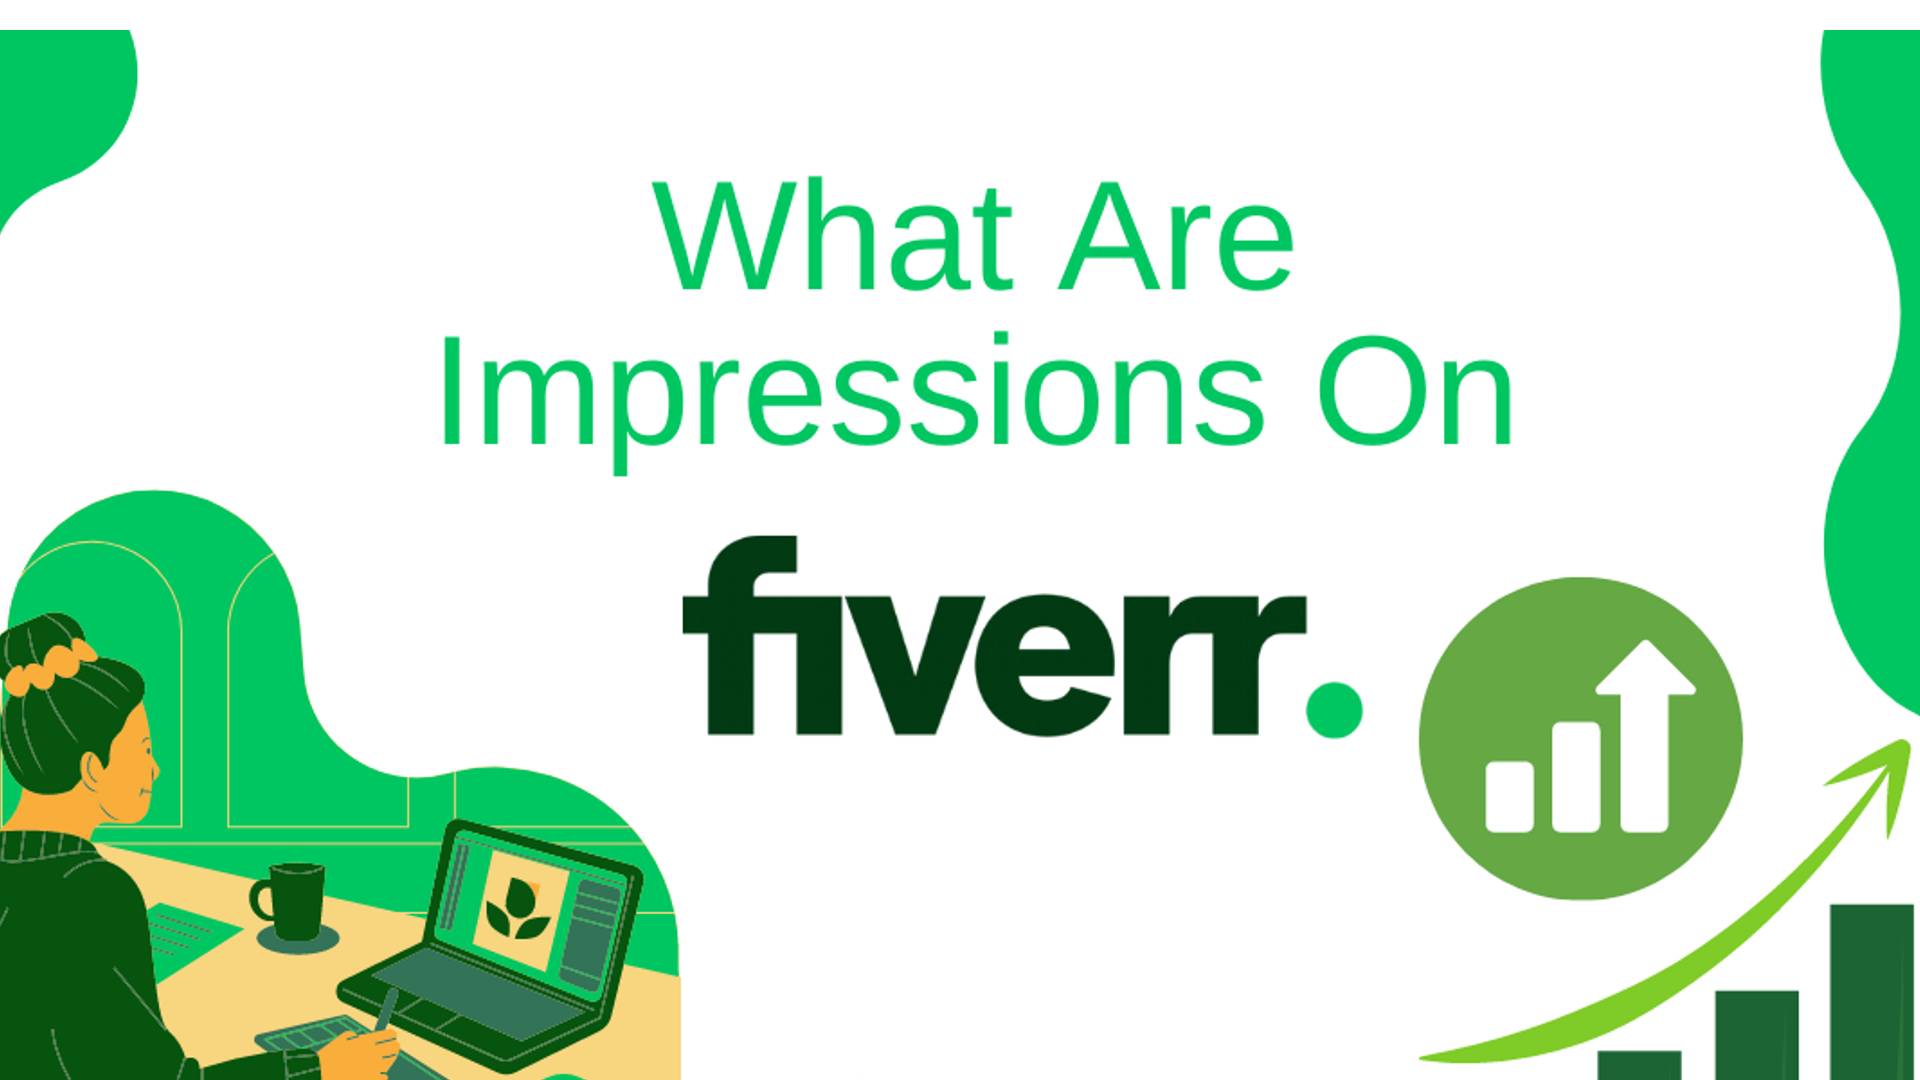 Improve Fiverr Impressions